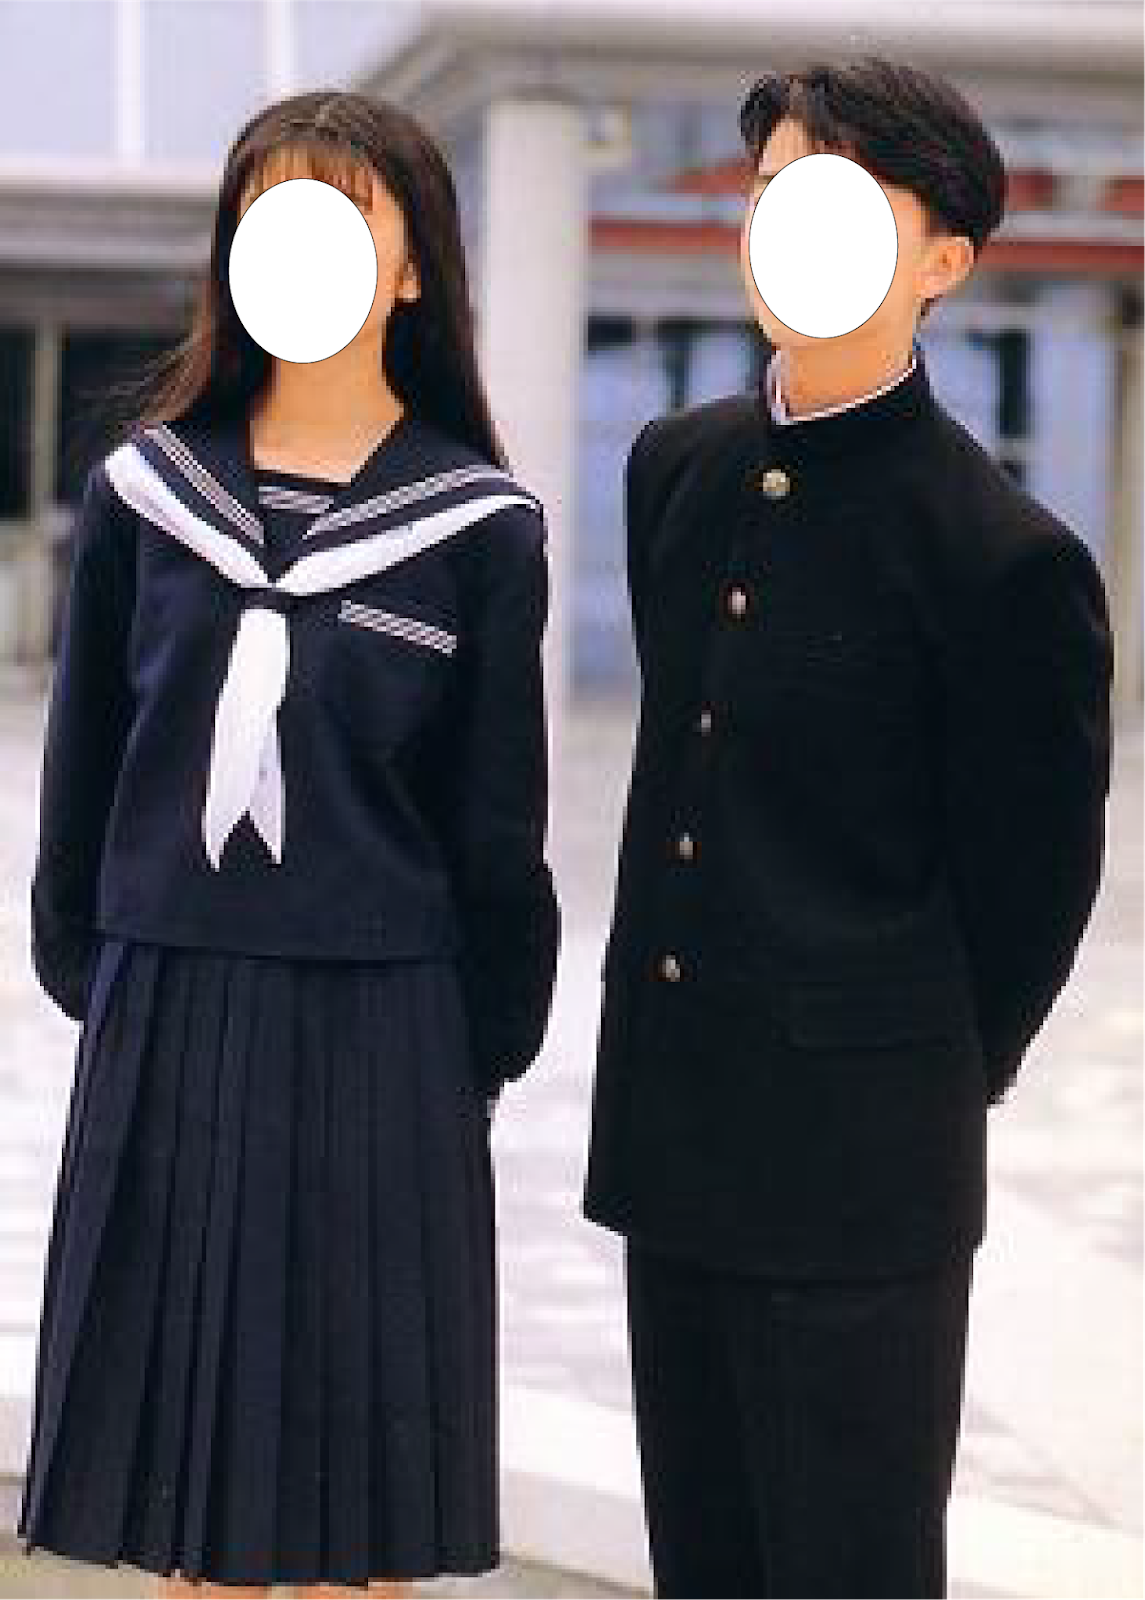 Japanese High School Girls Uniform Telegraph